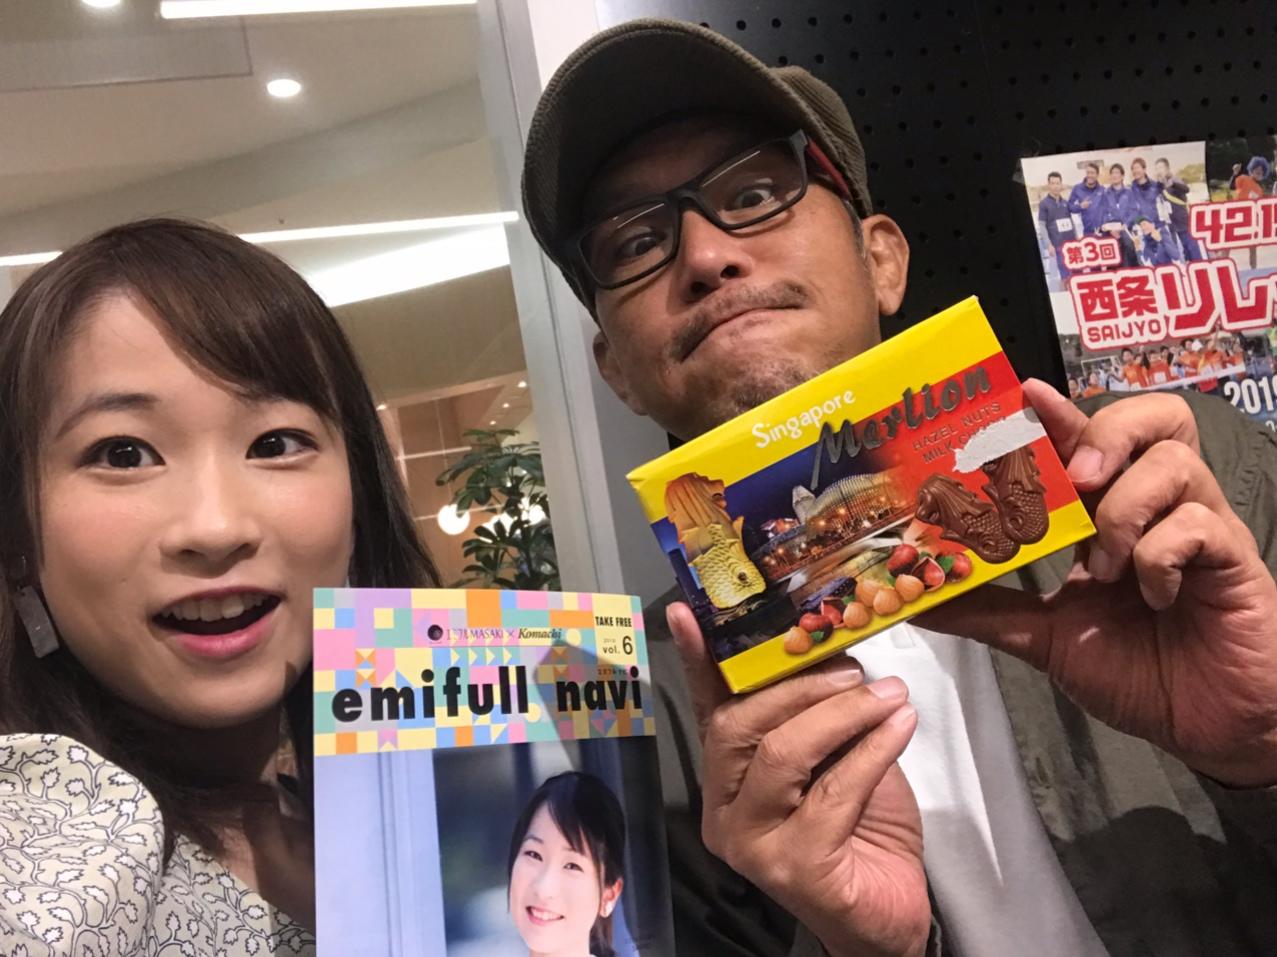 https://emifull.jp/emifulls_blog/12th/2019/09/files/IMG_8839.JPG